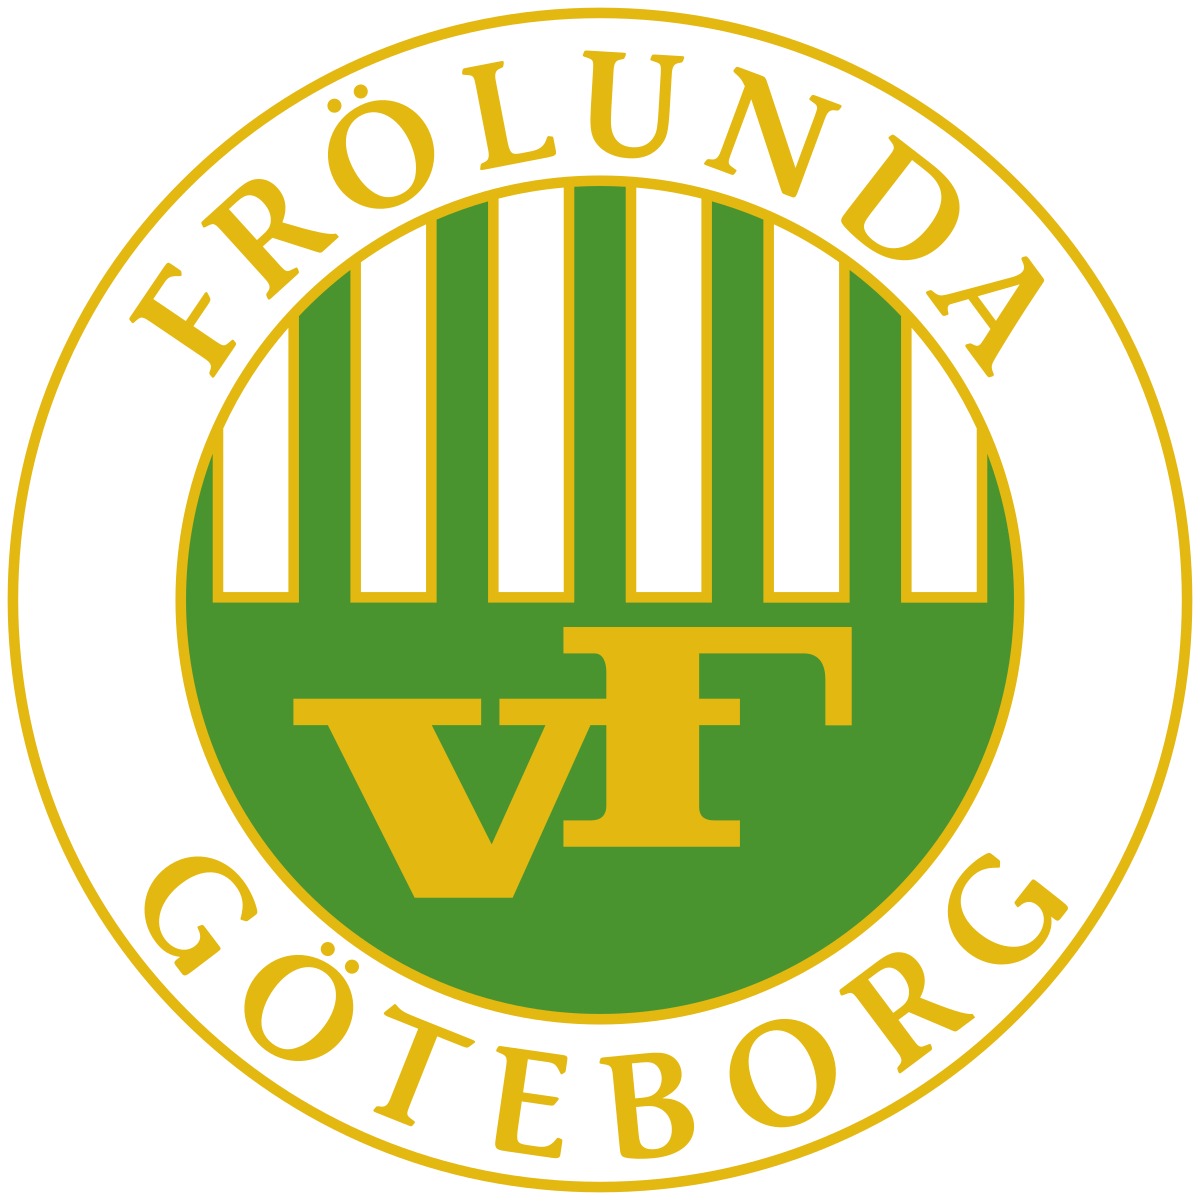 Vastra Frolunda logo